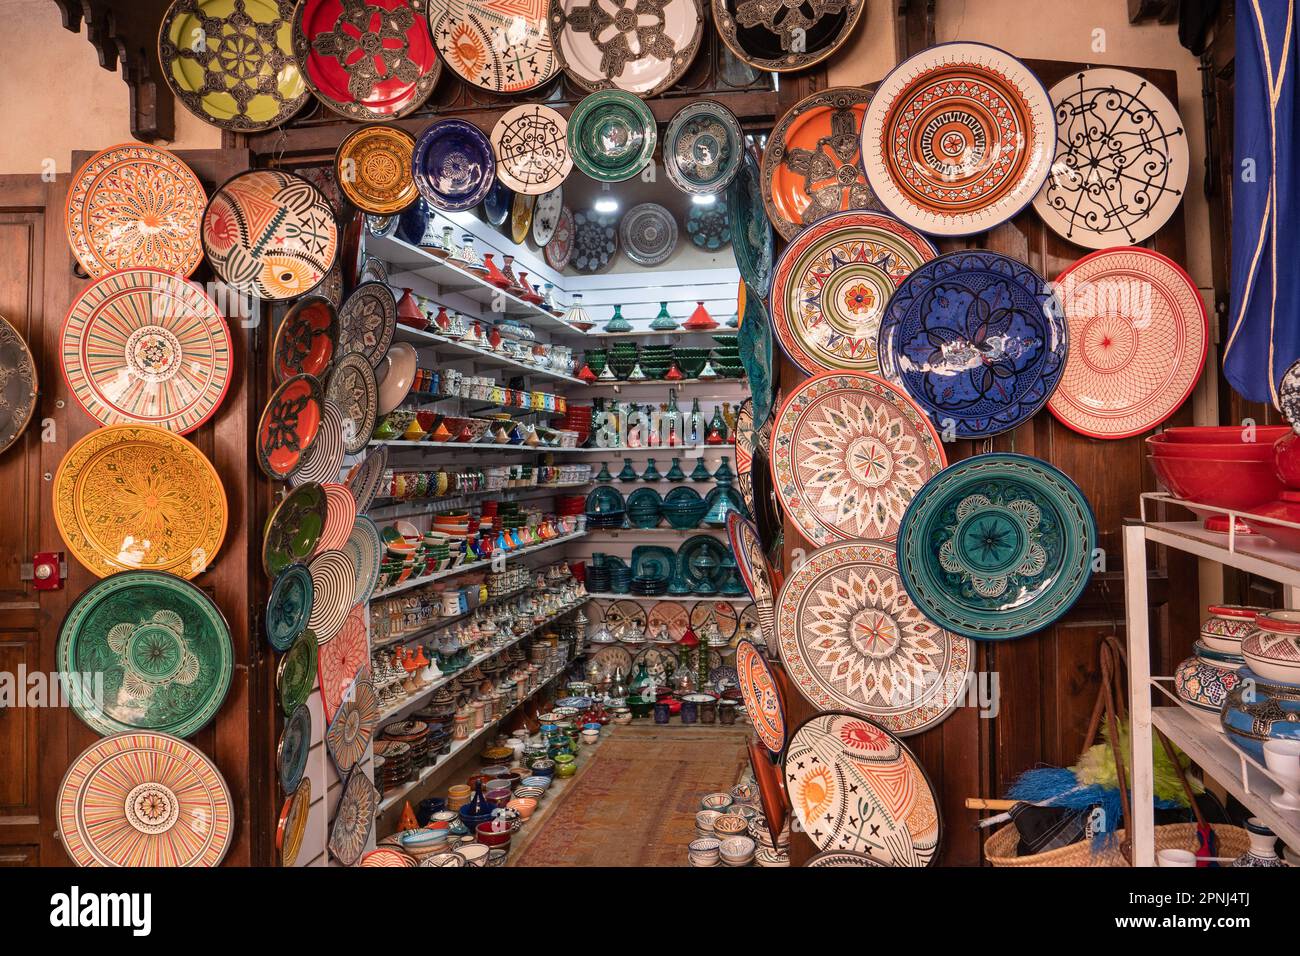 Schön dekorierter Souvenirladen mit traditioneller marokkanischer Keramik, negozio di souvenir con ceramiche tradizionali marocchine Foto Stock